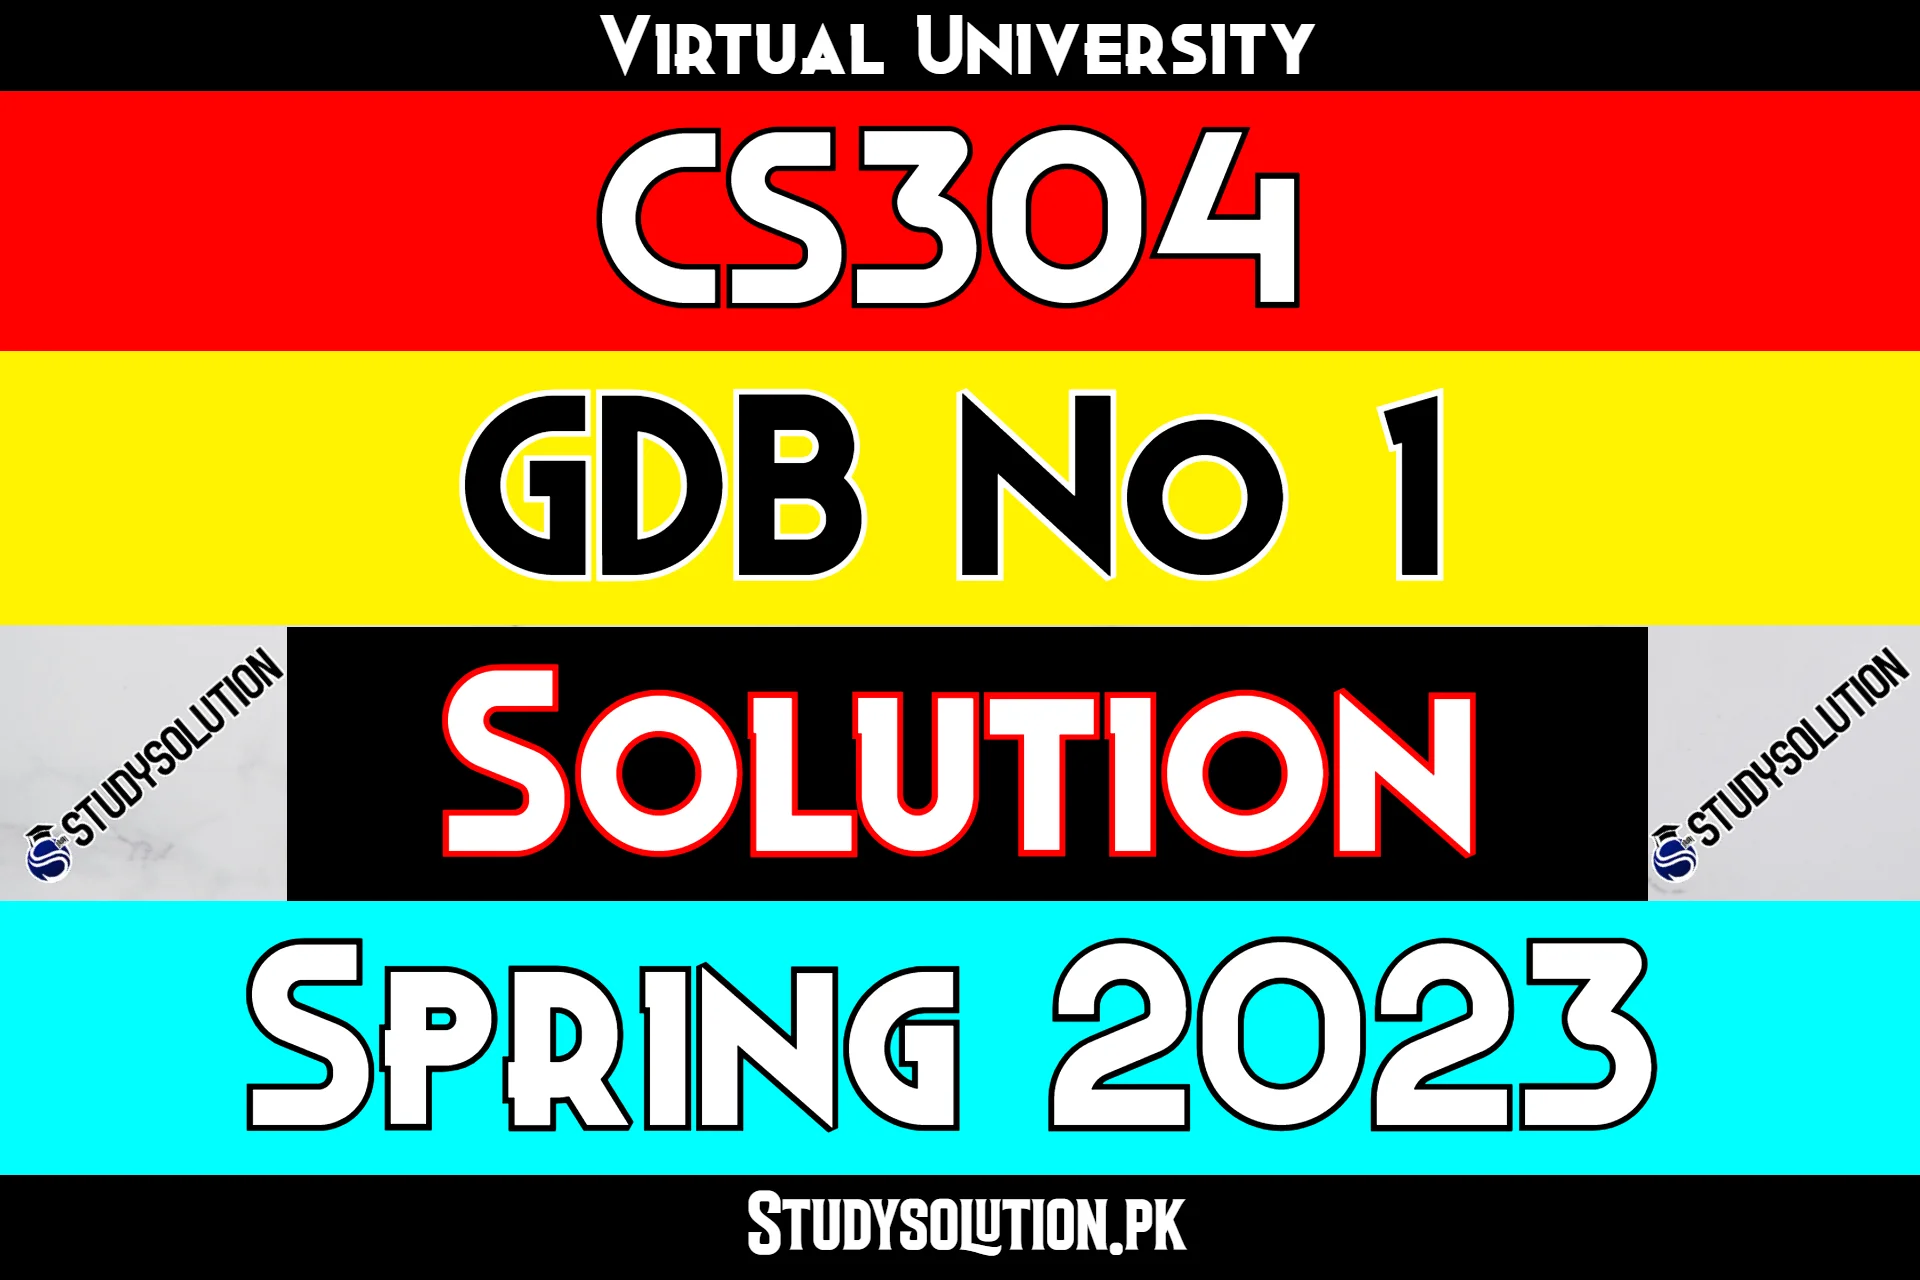 CS304 GDB No 1 Solution Spring 2023